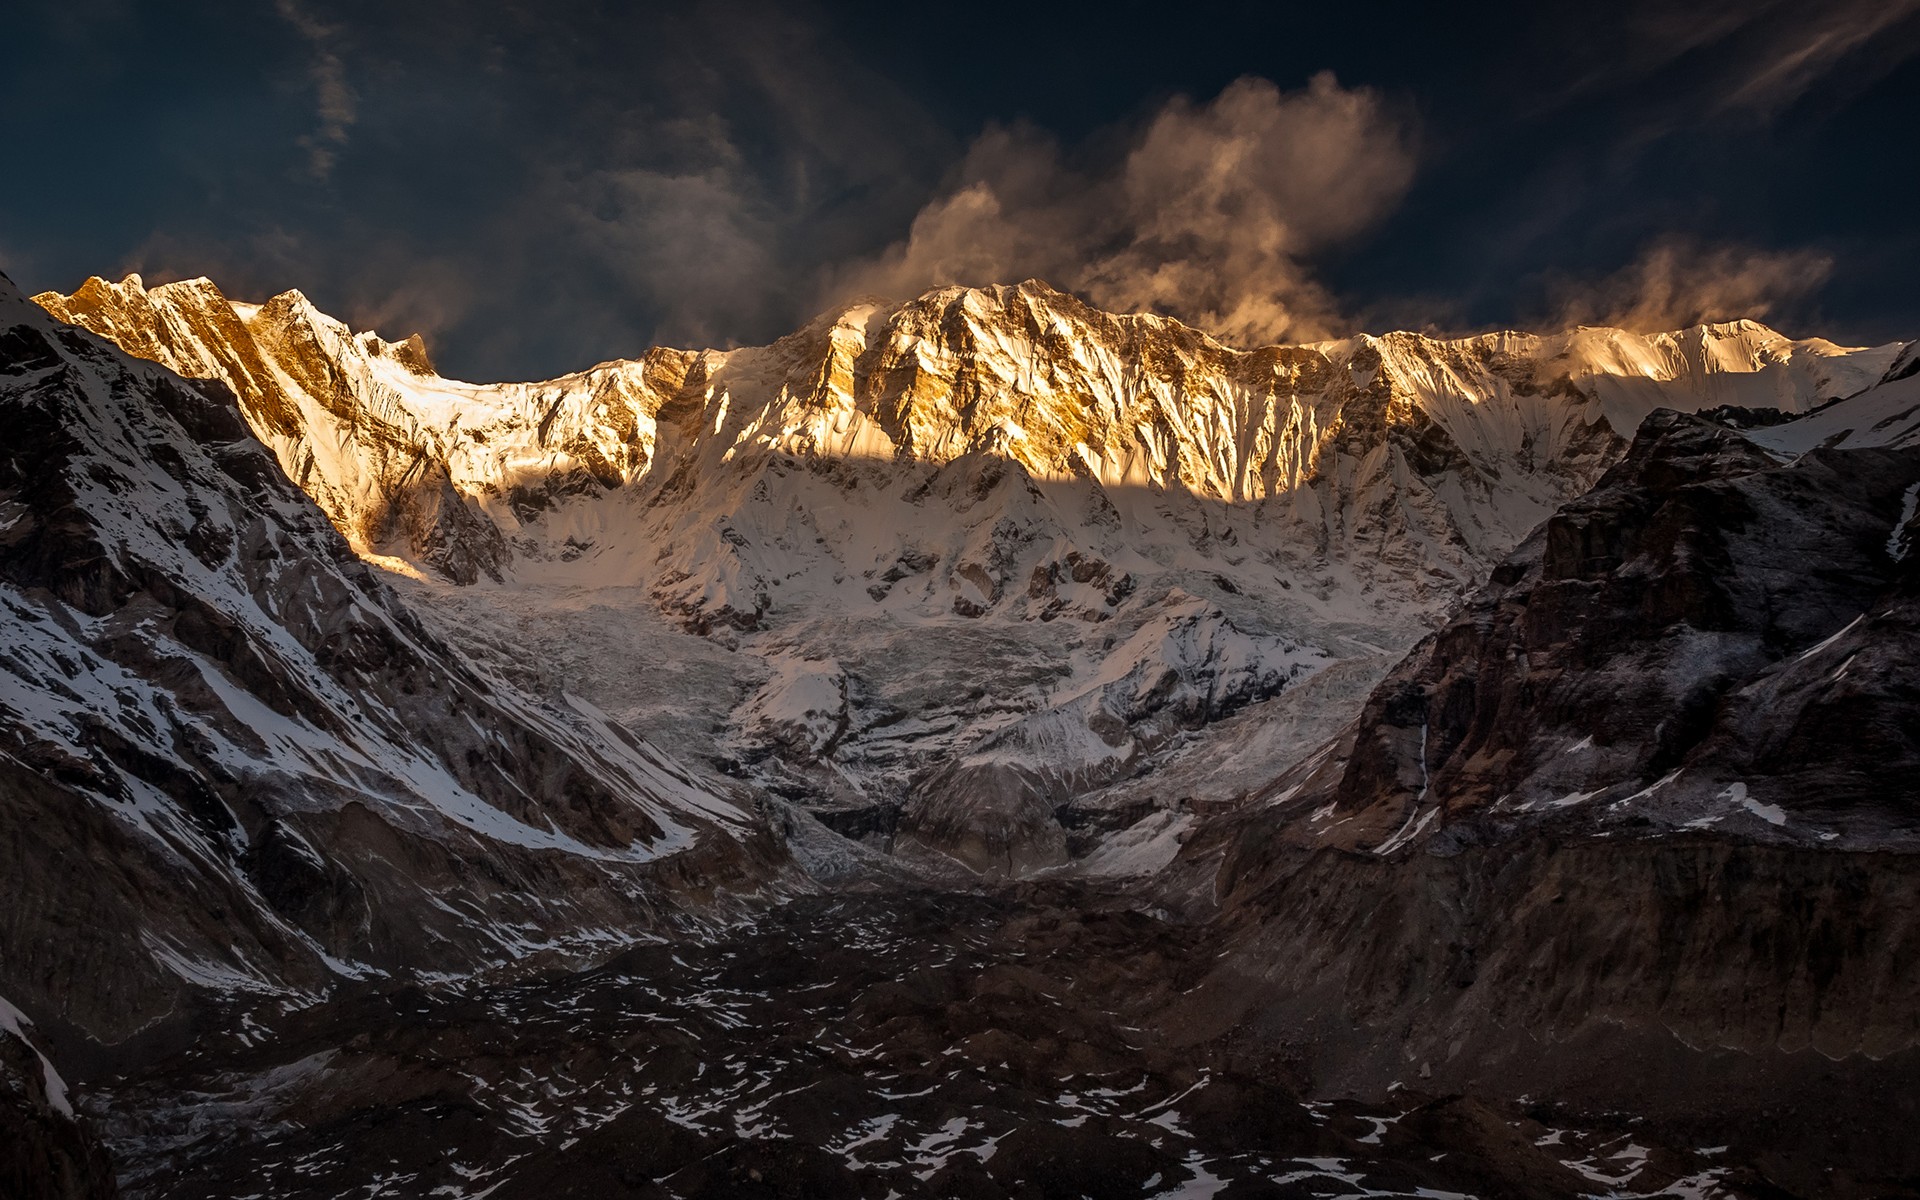 Annapurna , HD Wallpaper & Backgrounds